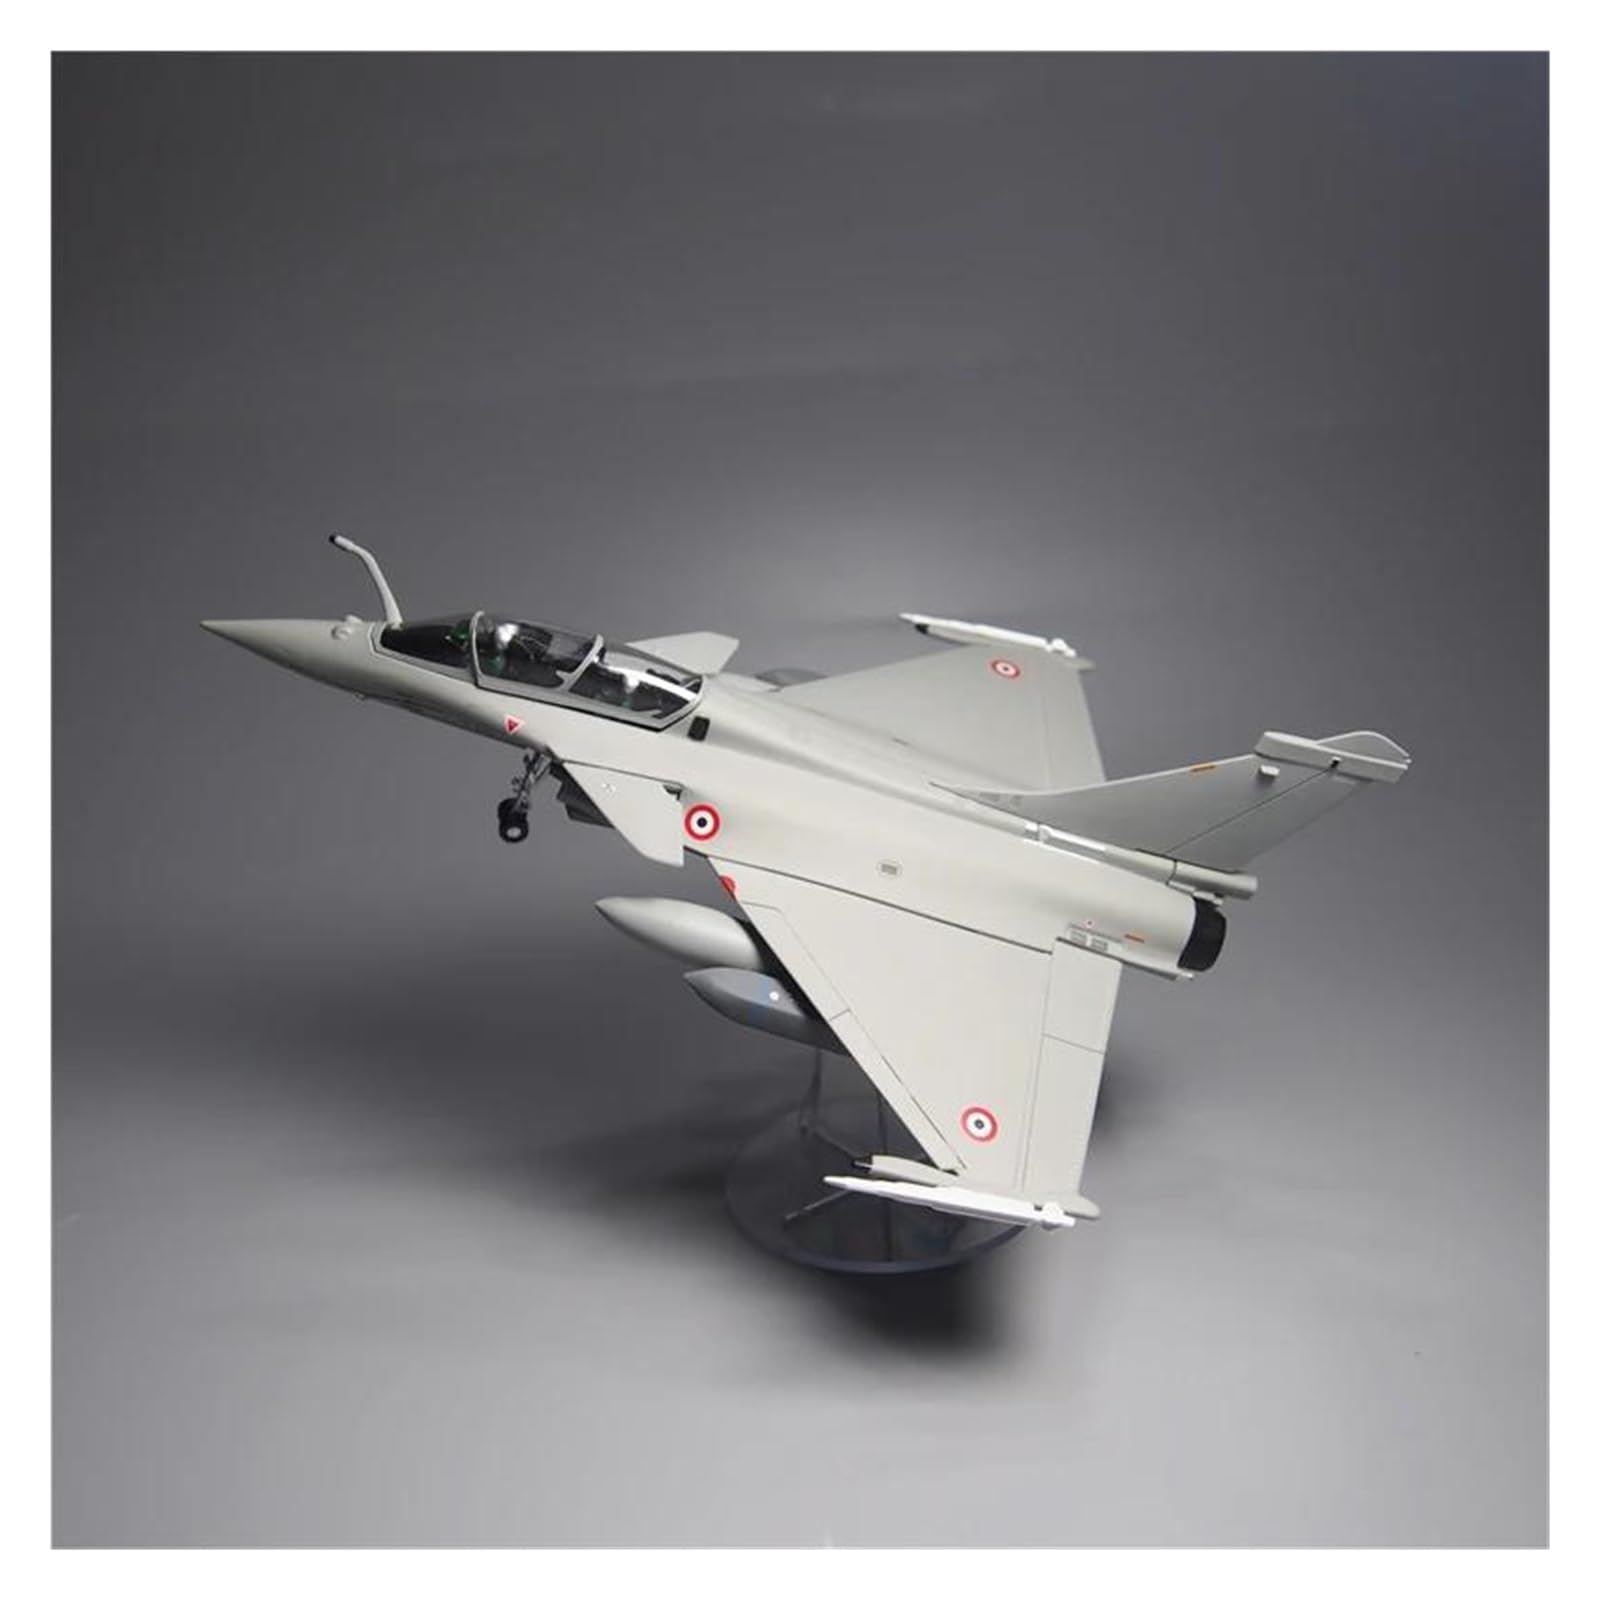 Aerobatic Flugzeug Für Dassault Rafale B Militär Kampfflugzeug Legierung Simulation Modell Französische Luftwaffe Sammeln Spielzeug Maßstab 1:72